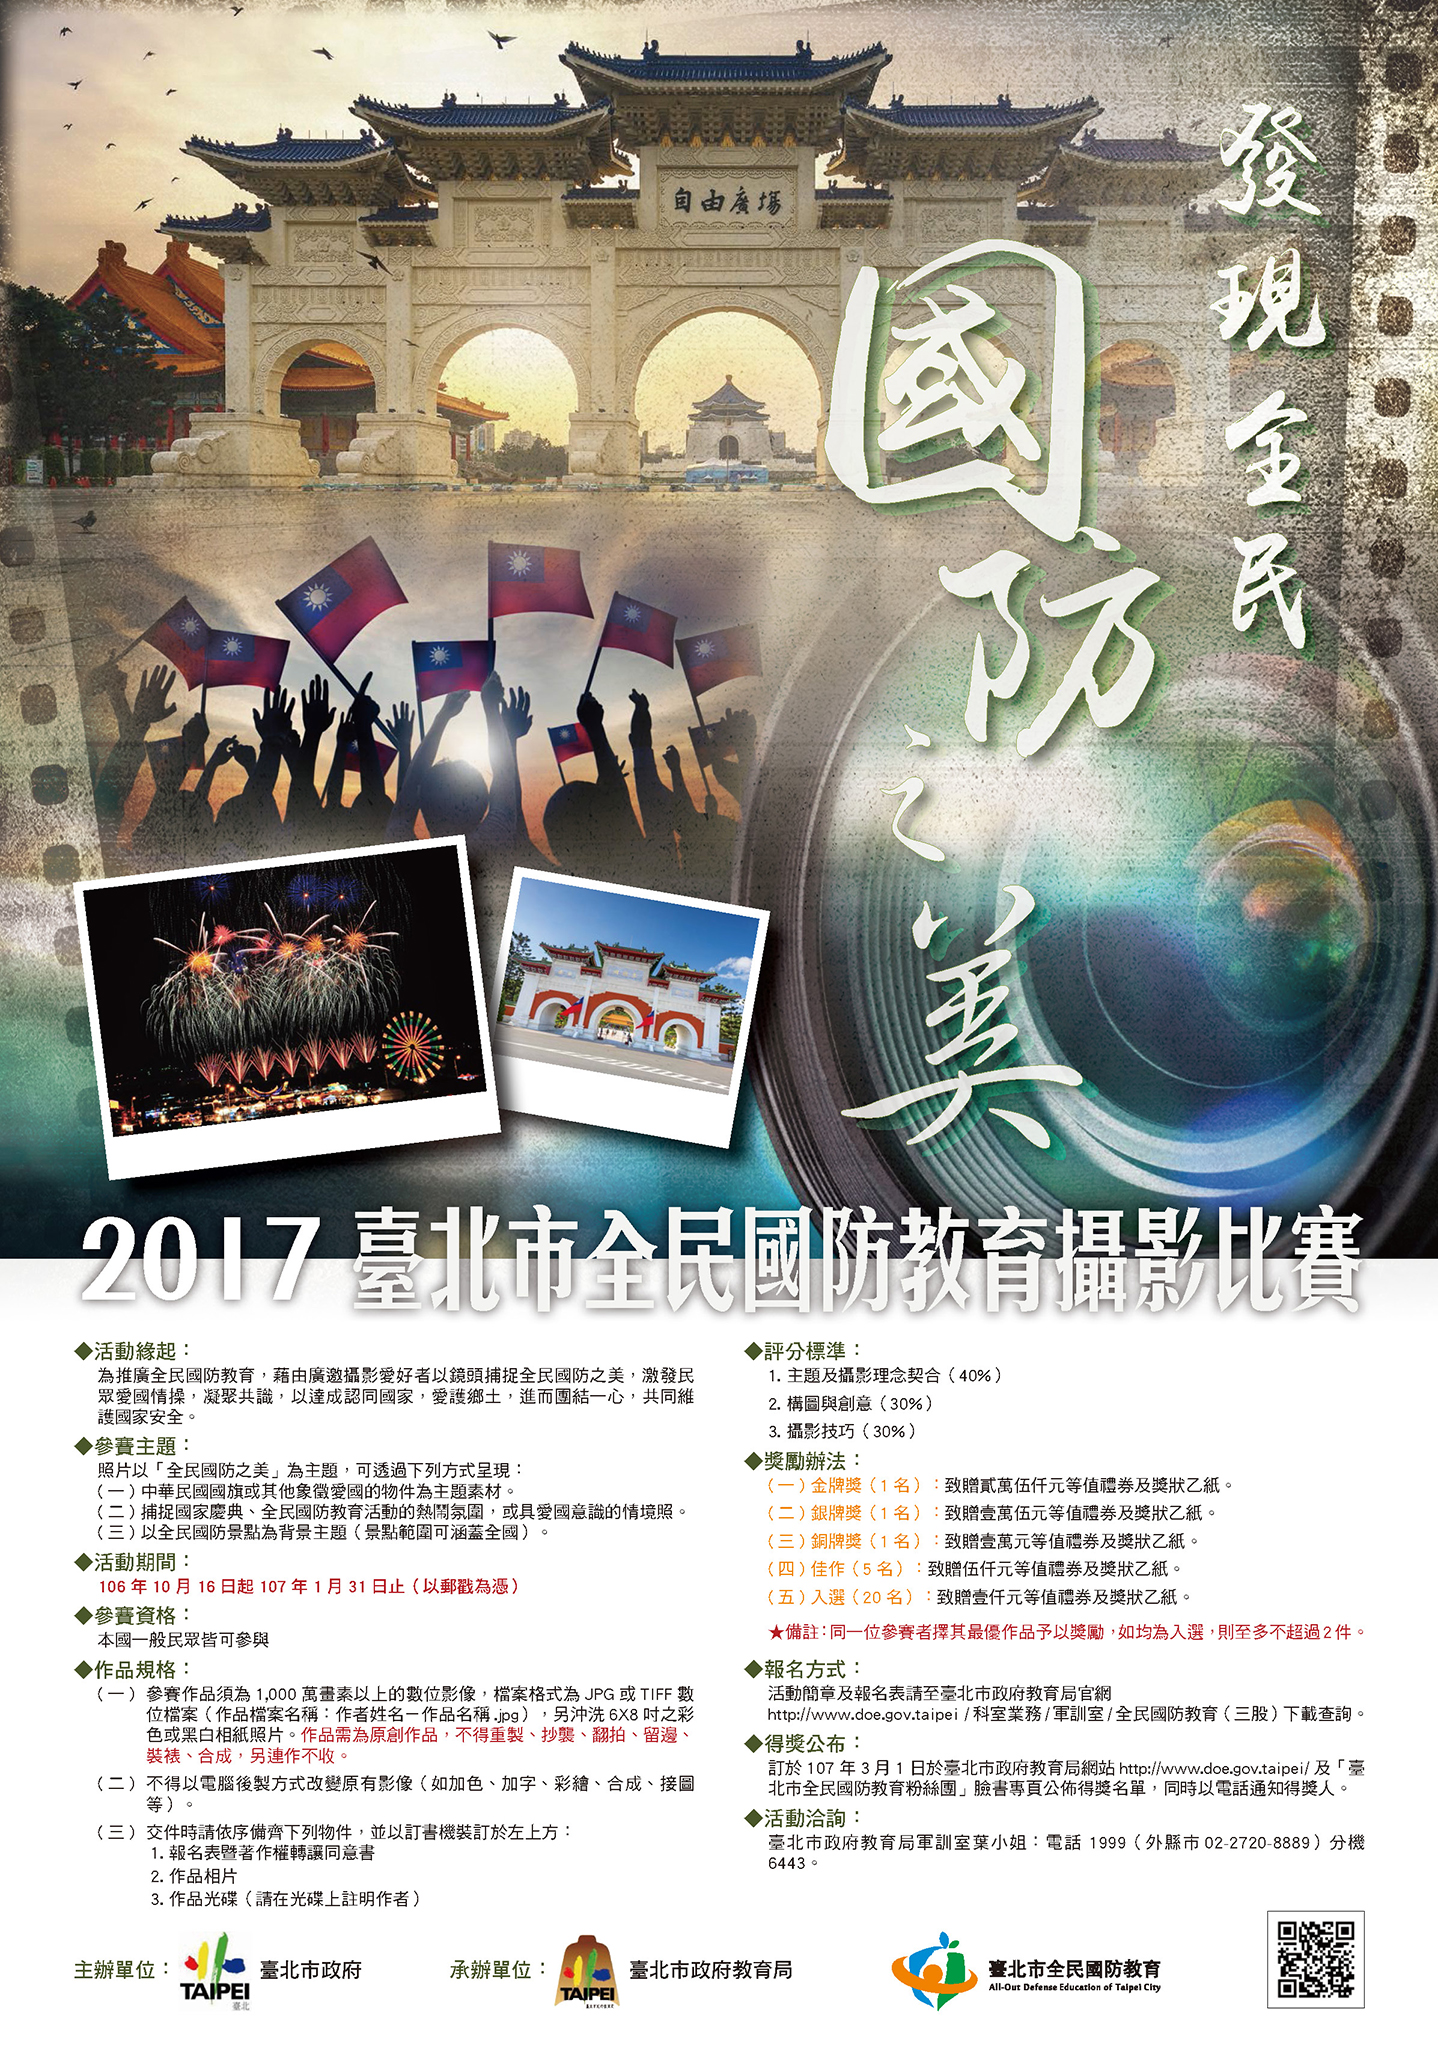 「發現全民國防之美」2017臺北市全民國防教育攝影比賽